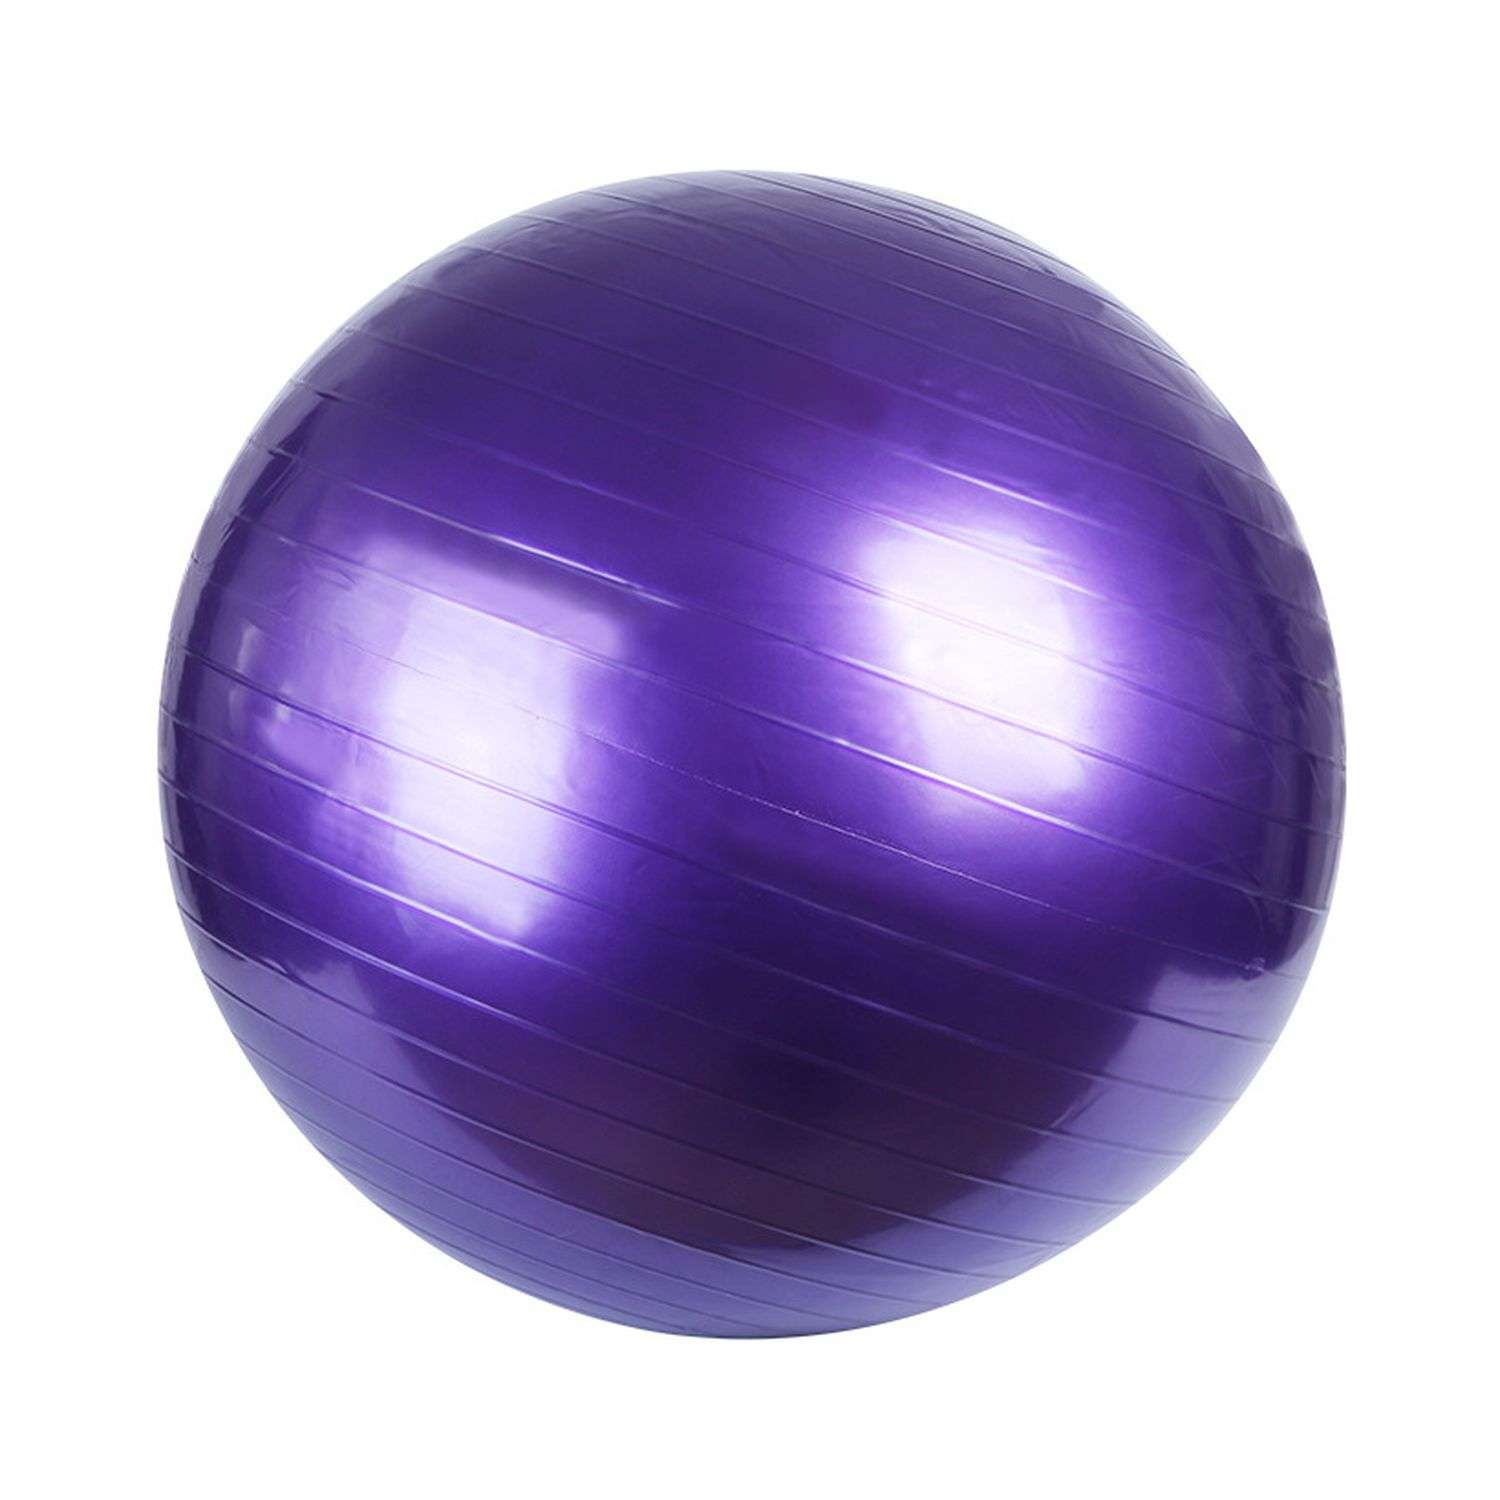 Фитбол Beroma с антивзрывным эффектом 85 см фиолетовый - фото 1